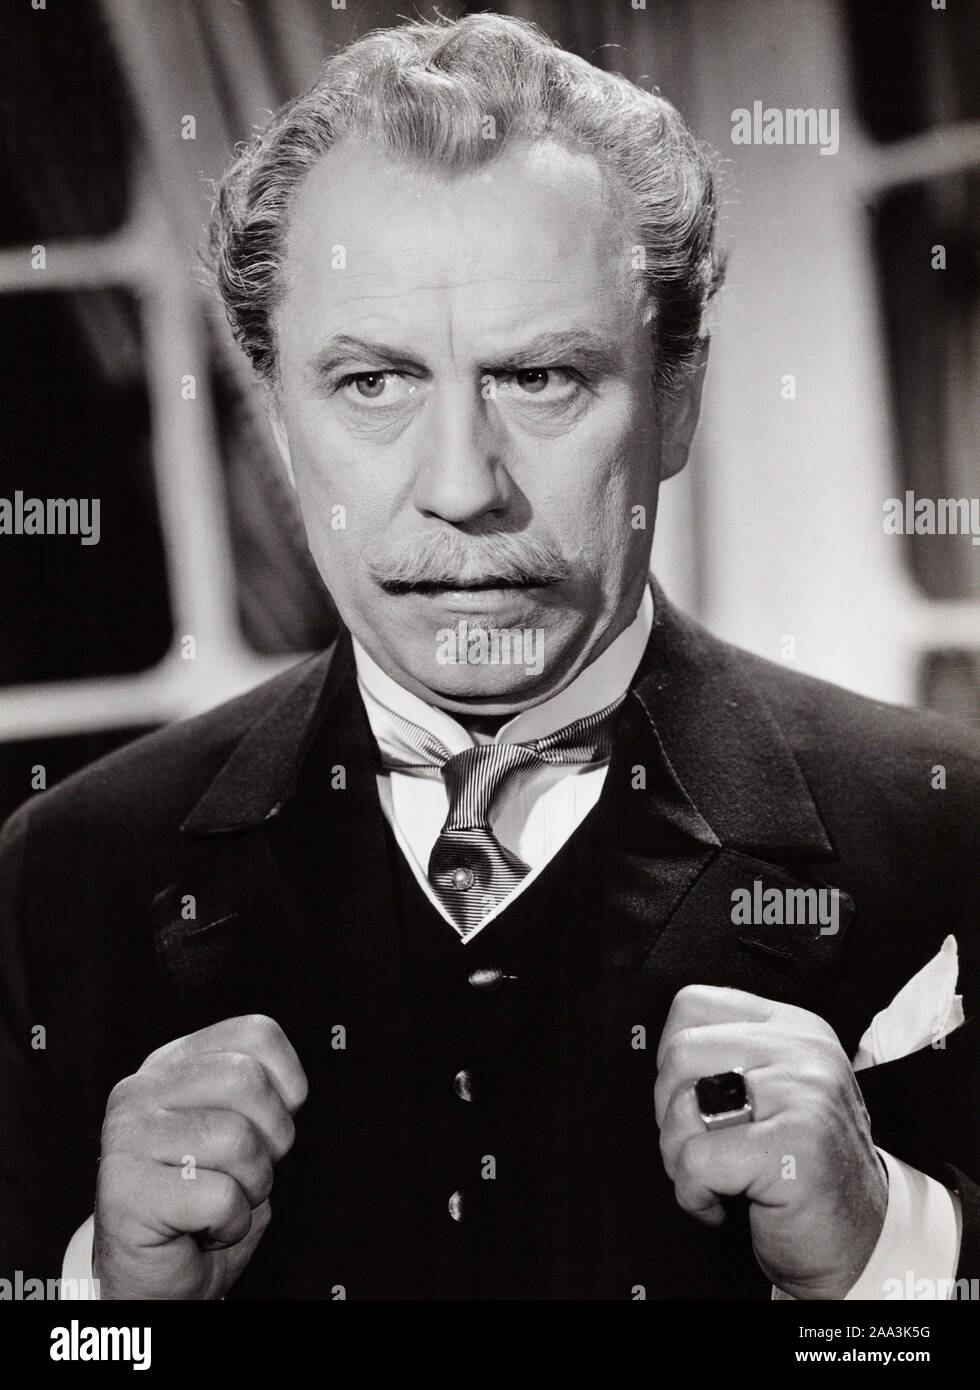 Werner Hinz, deutscher Schauspieler, Deutschland Mitte 1950er Jahre. German actor Werner Hinz, Germany mid 1950s. Stock Photo